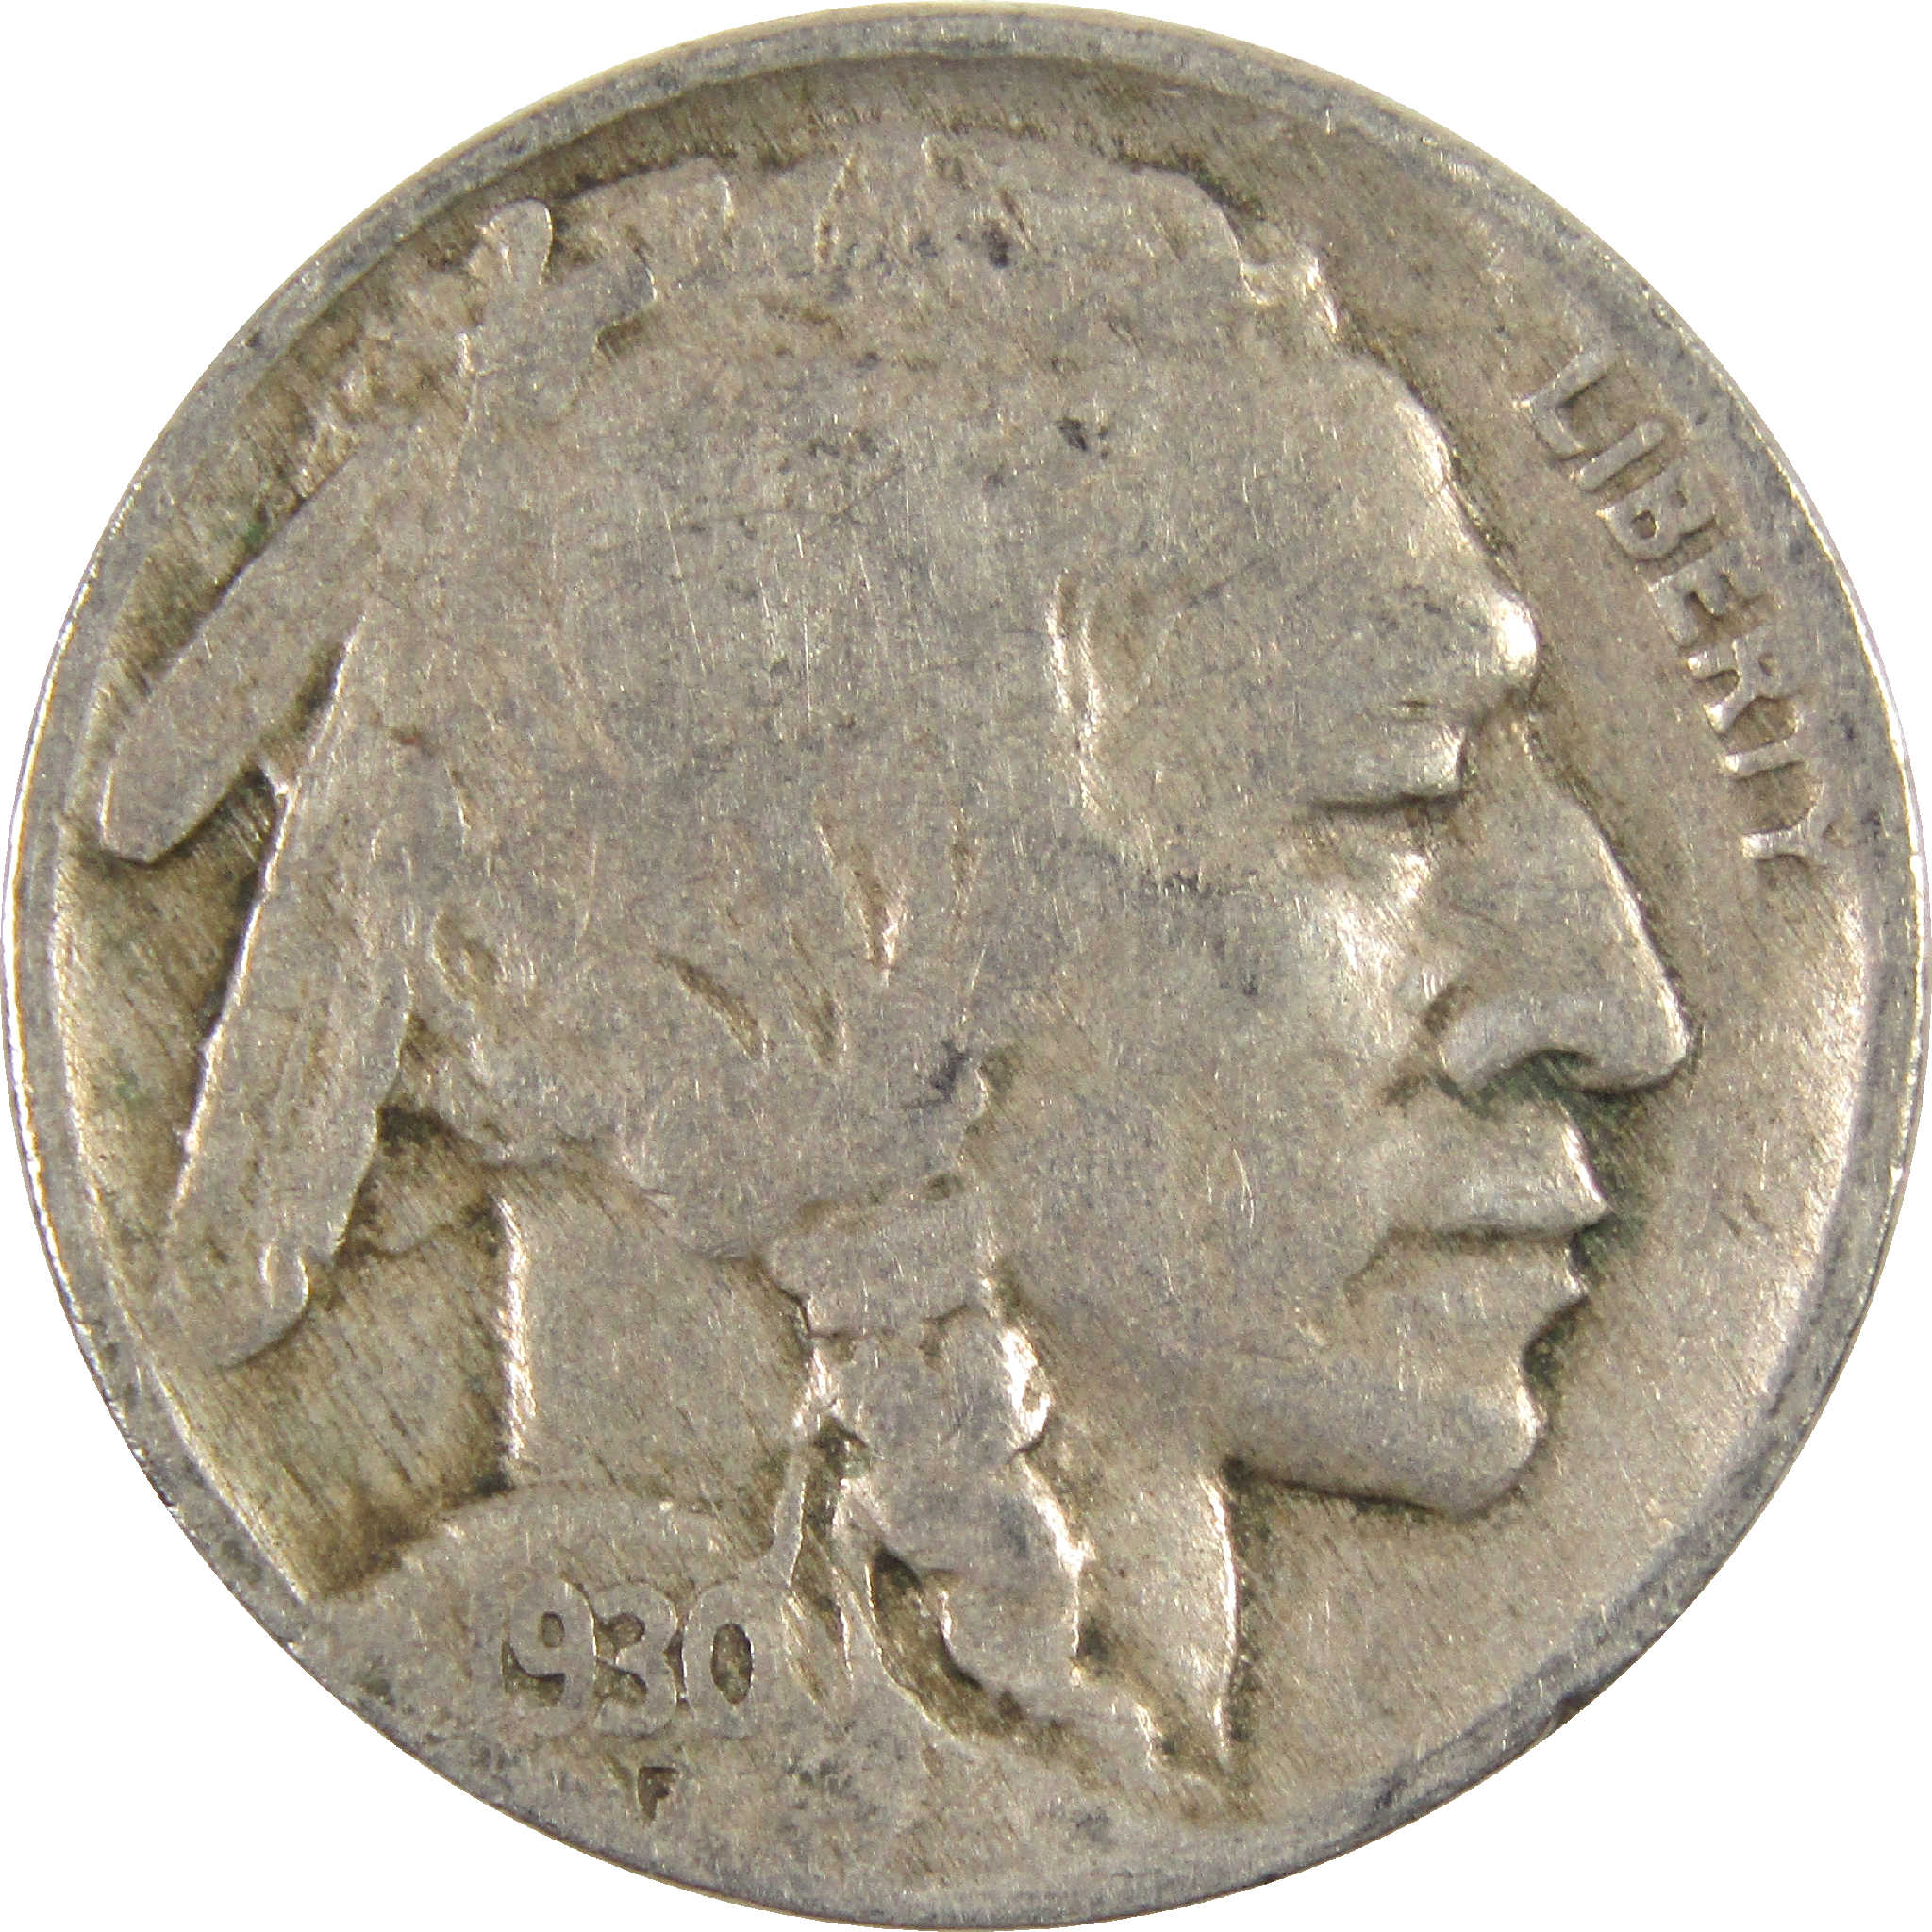 1930 Indian Head Buffalo Nickel G Good 5c Coin